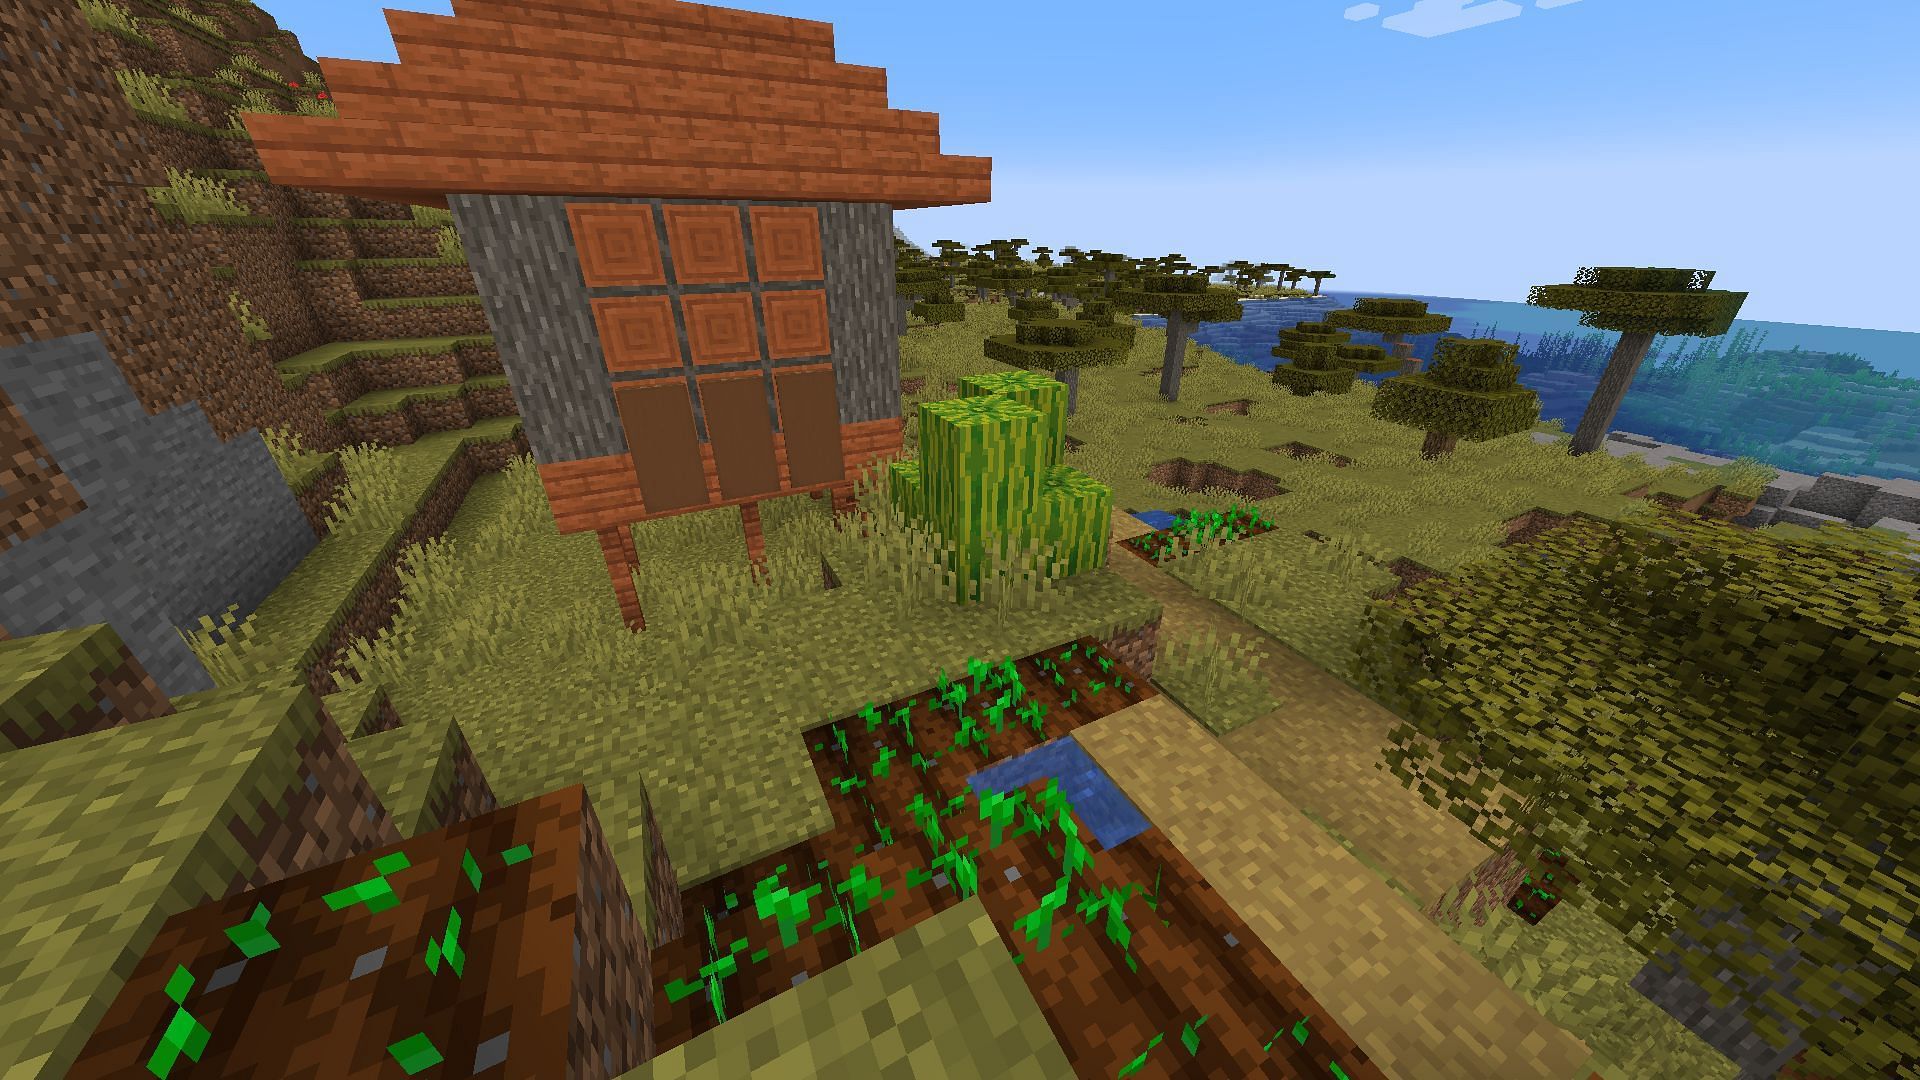 Growing in Savanna villages (Image via Minecraft)